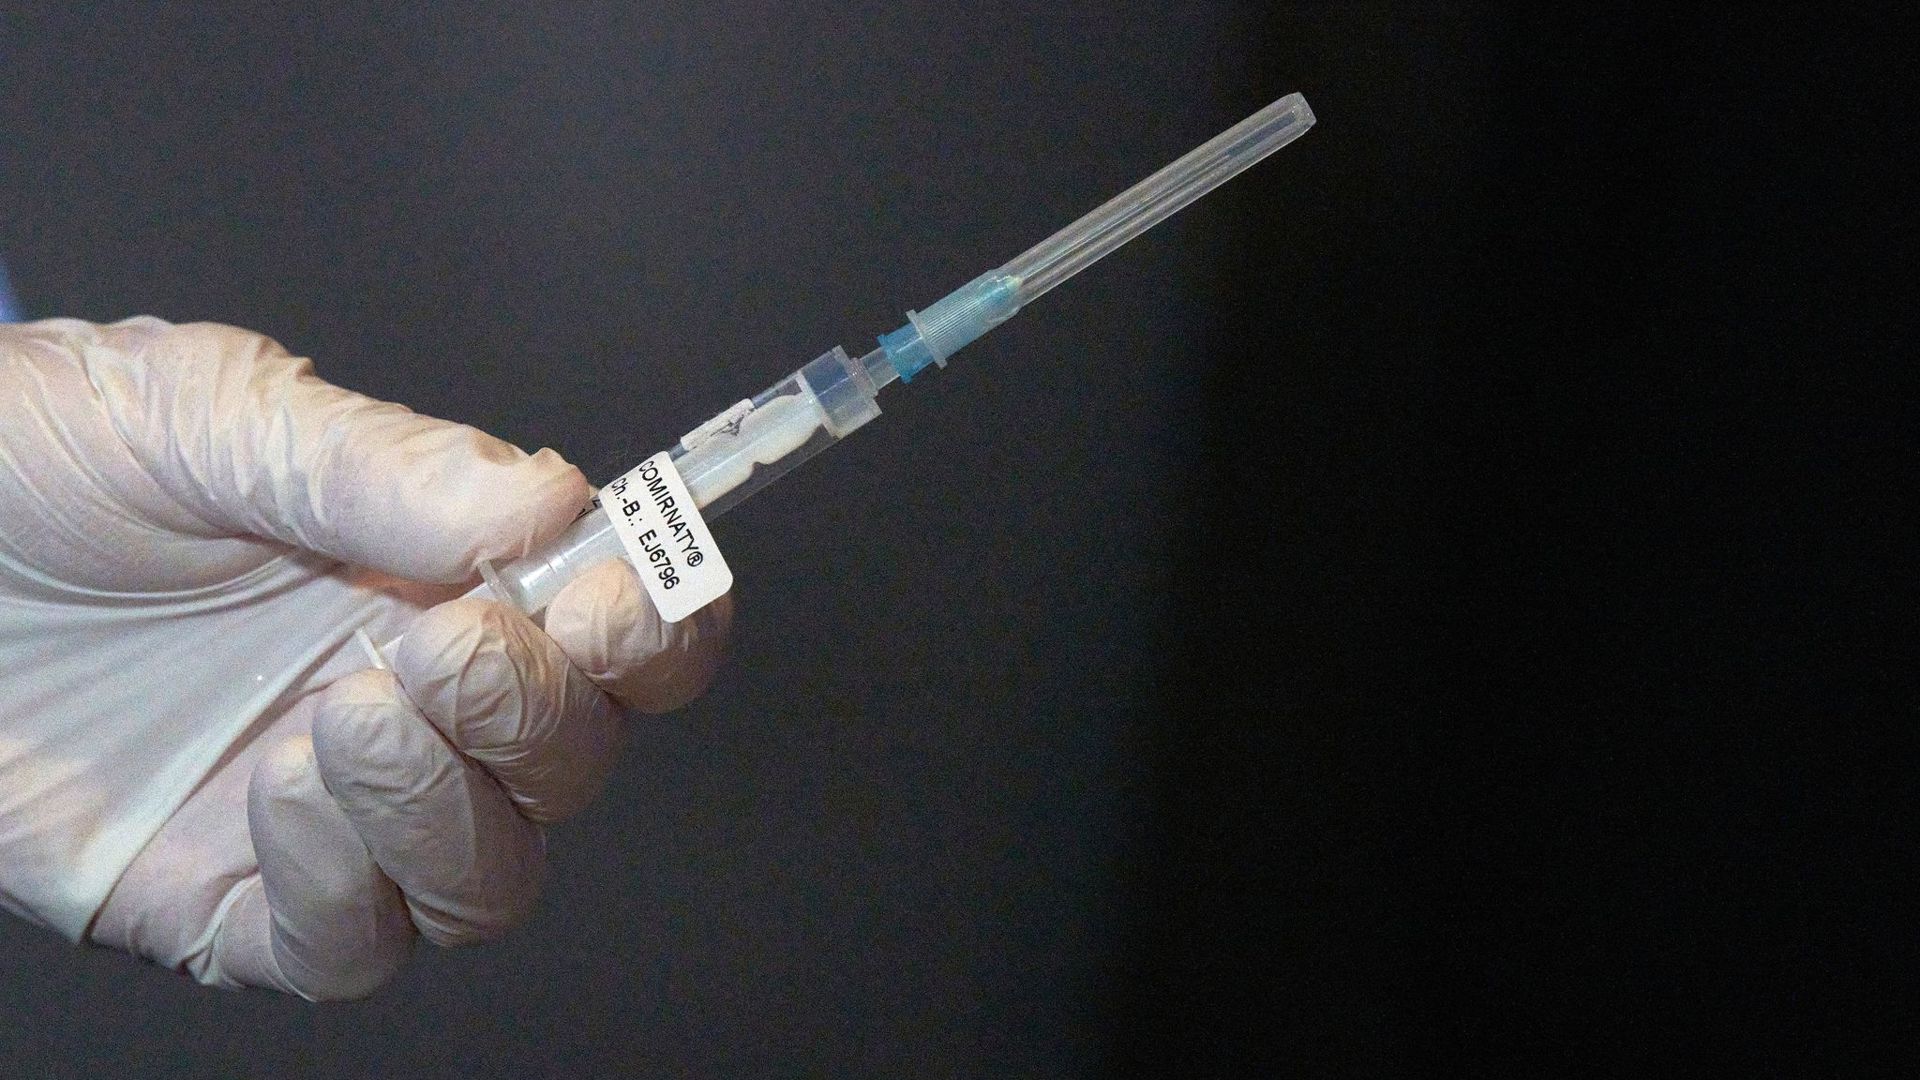 Eine Mitarbeiterin eines Impfteams überprüft eine Spritze mit einem Impfstoff gegen Covid-19.